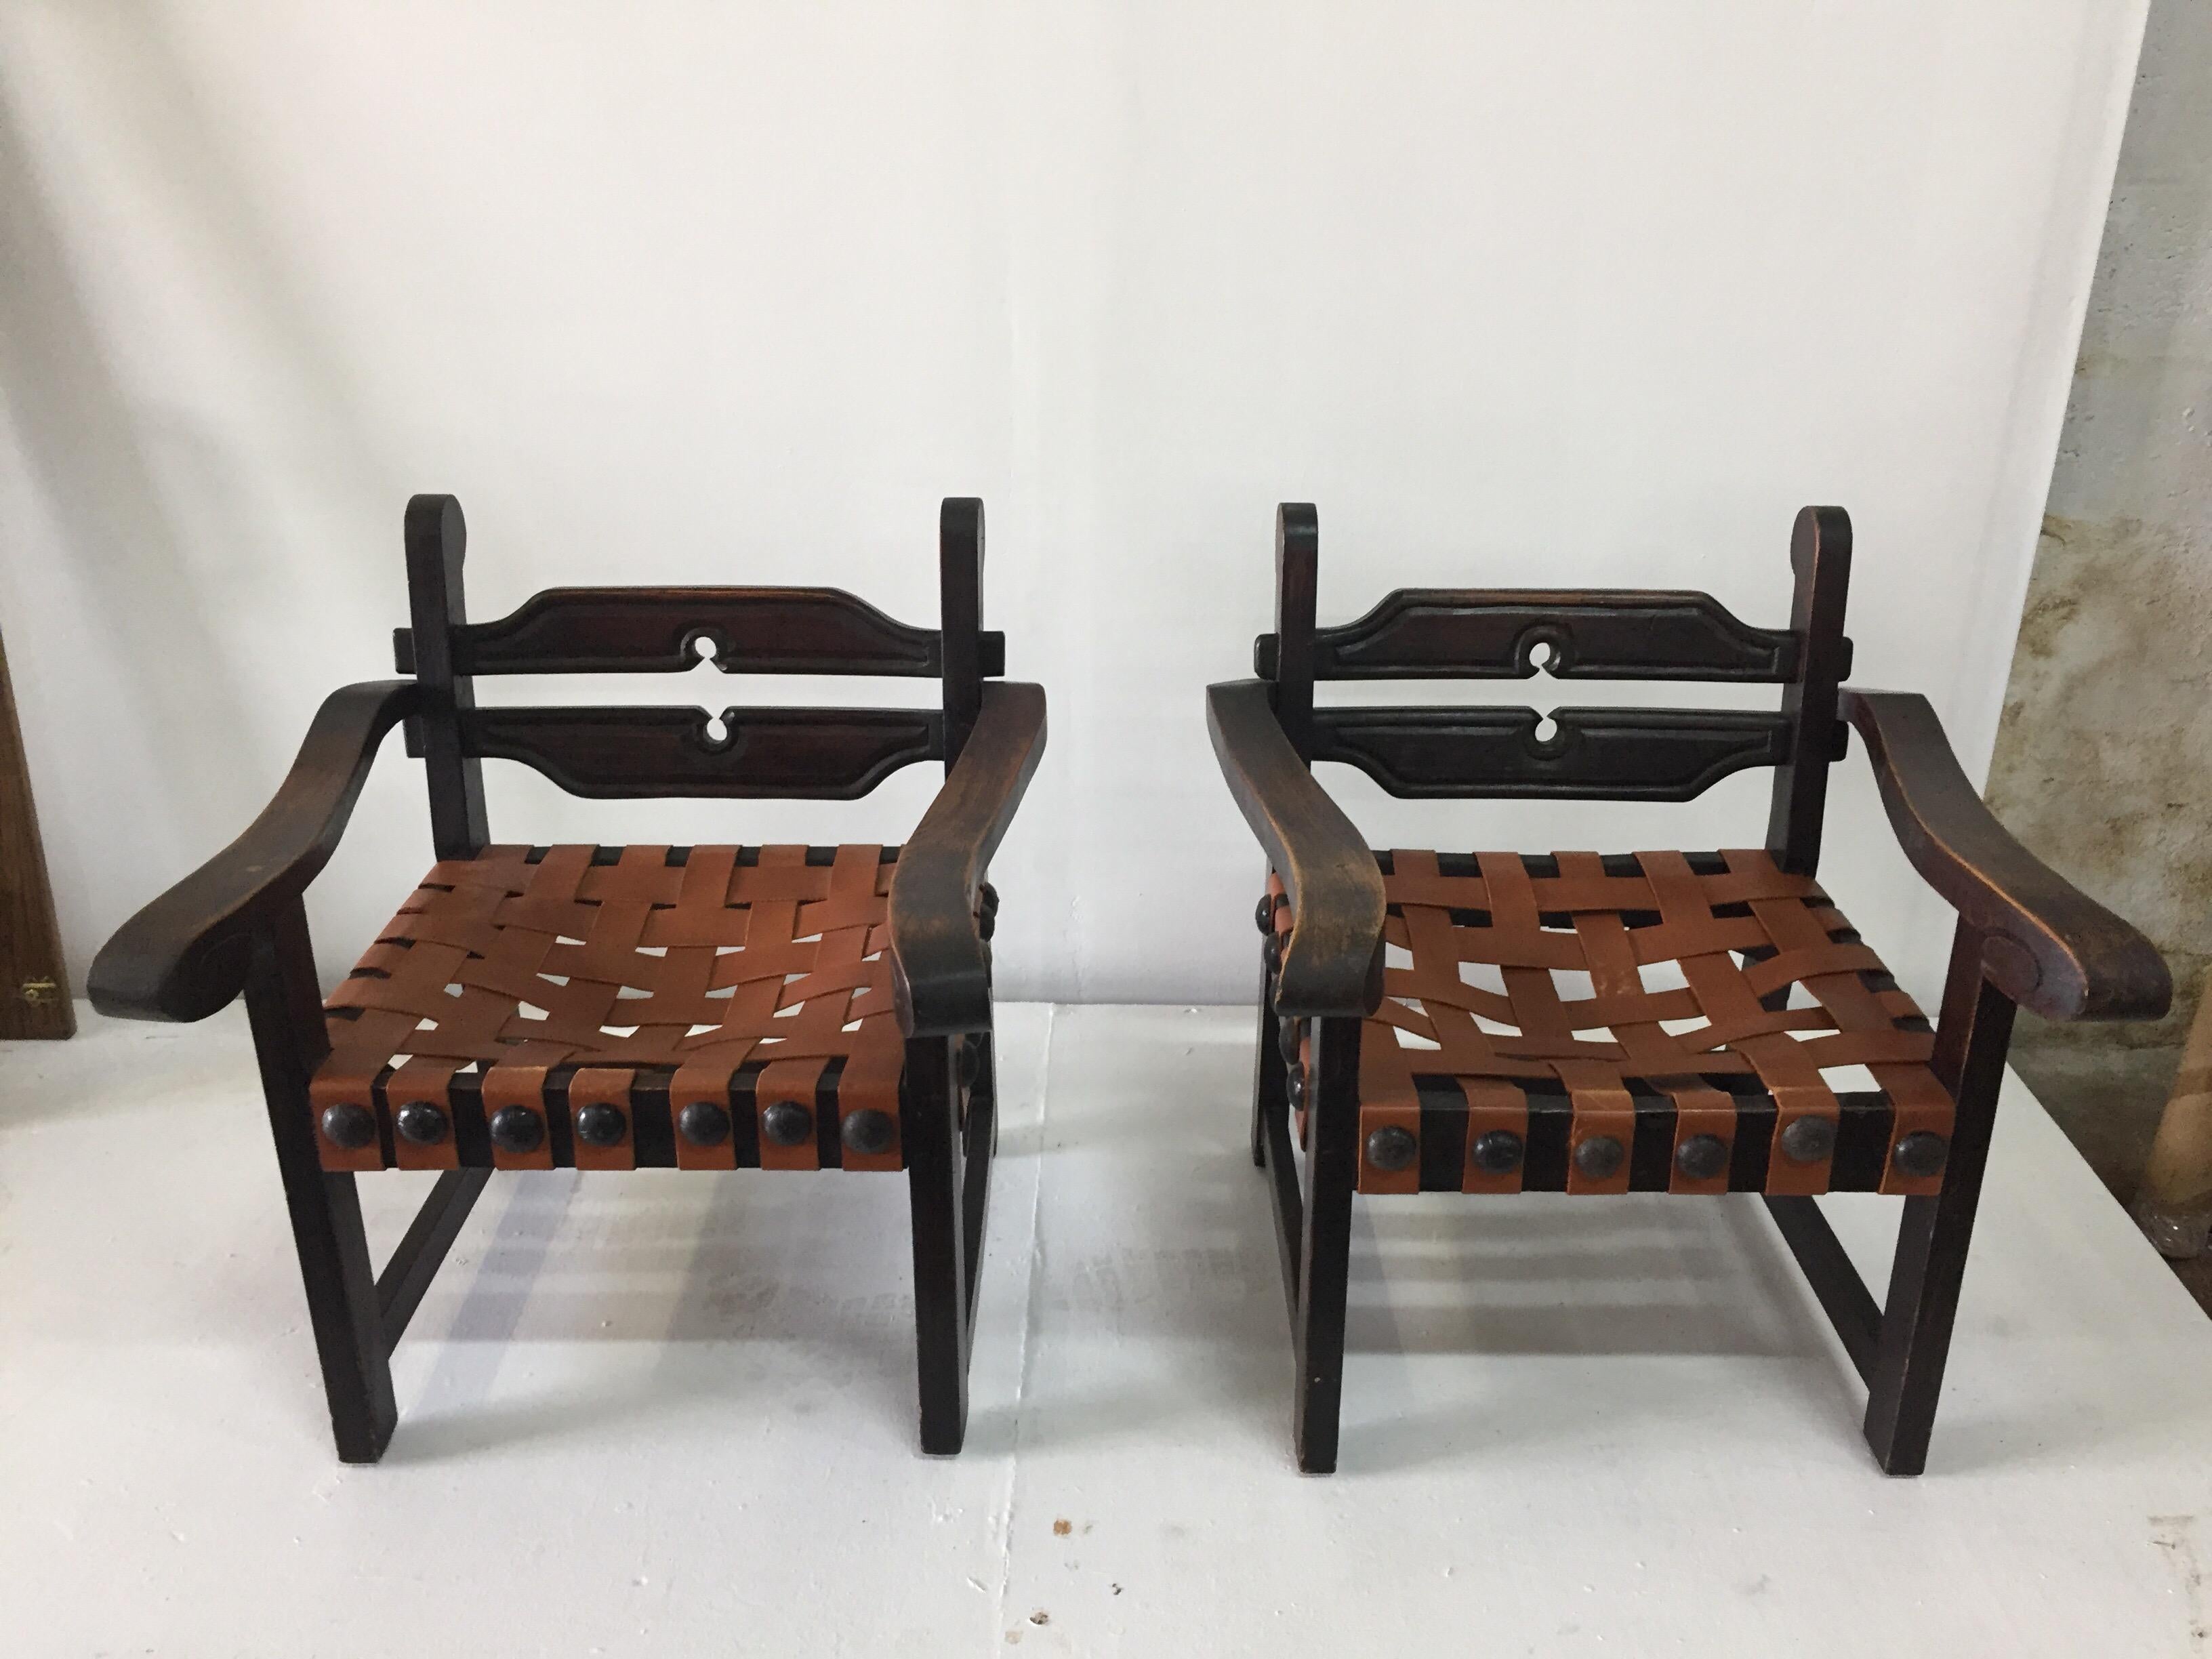 Dies ist ein wunderschönes authentisches Stuhlpaar des Künstlers und Silberschmieds William Spratling, das in den 40er Jahren in seiner Werkstatt in Taxco hergestellt wurde.  Sitze aus Sabinoholz und echtem Leder, rustikale und originelle